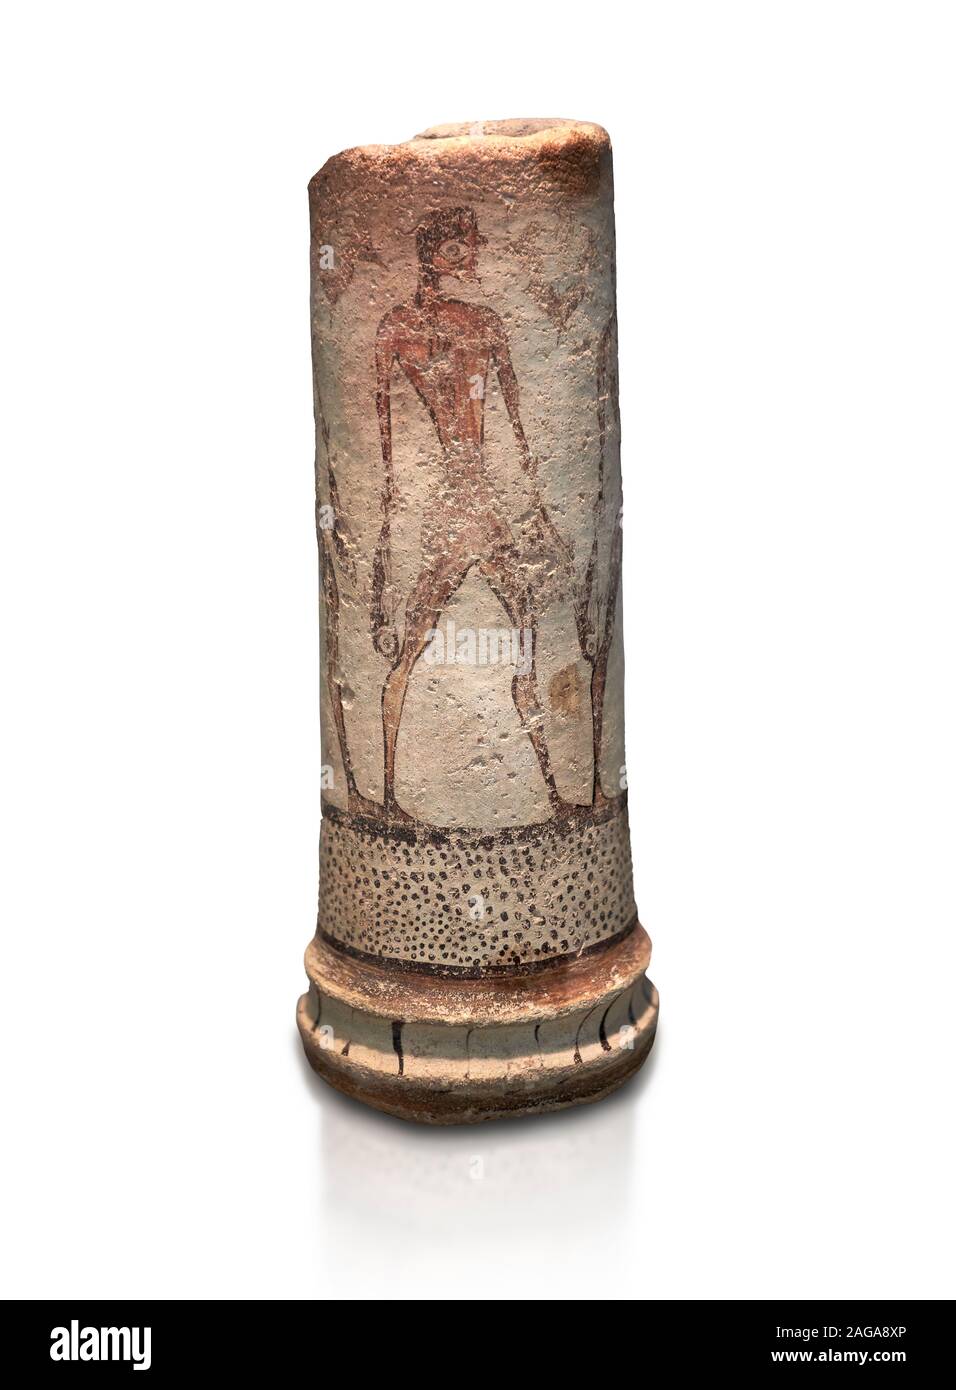 Vase cylindrique illustré des Cyclades avec un pêcheur (1600 avant J.-C.) , III de Phylakopi, Melos. Musée National Archéologique d'Athènes. Cat No 5782. Ba blanc Banque D'Images